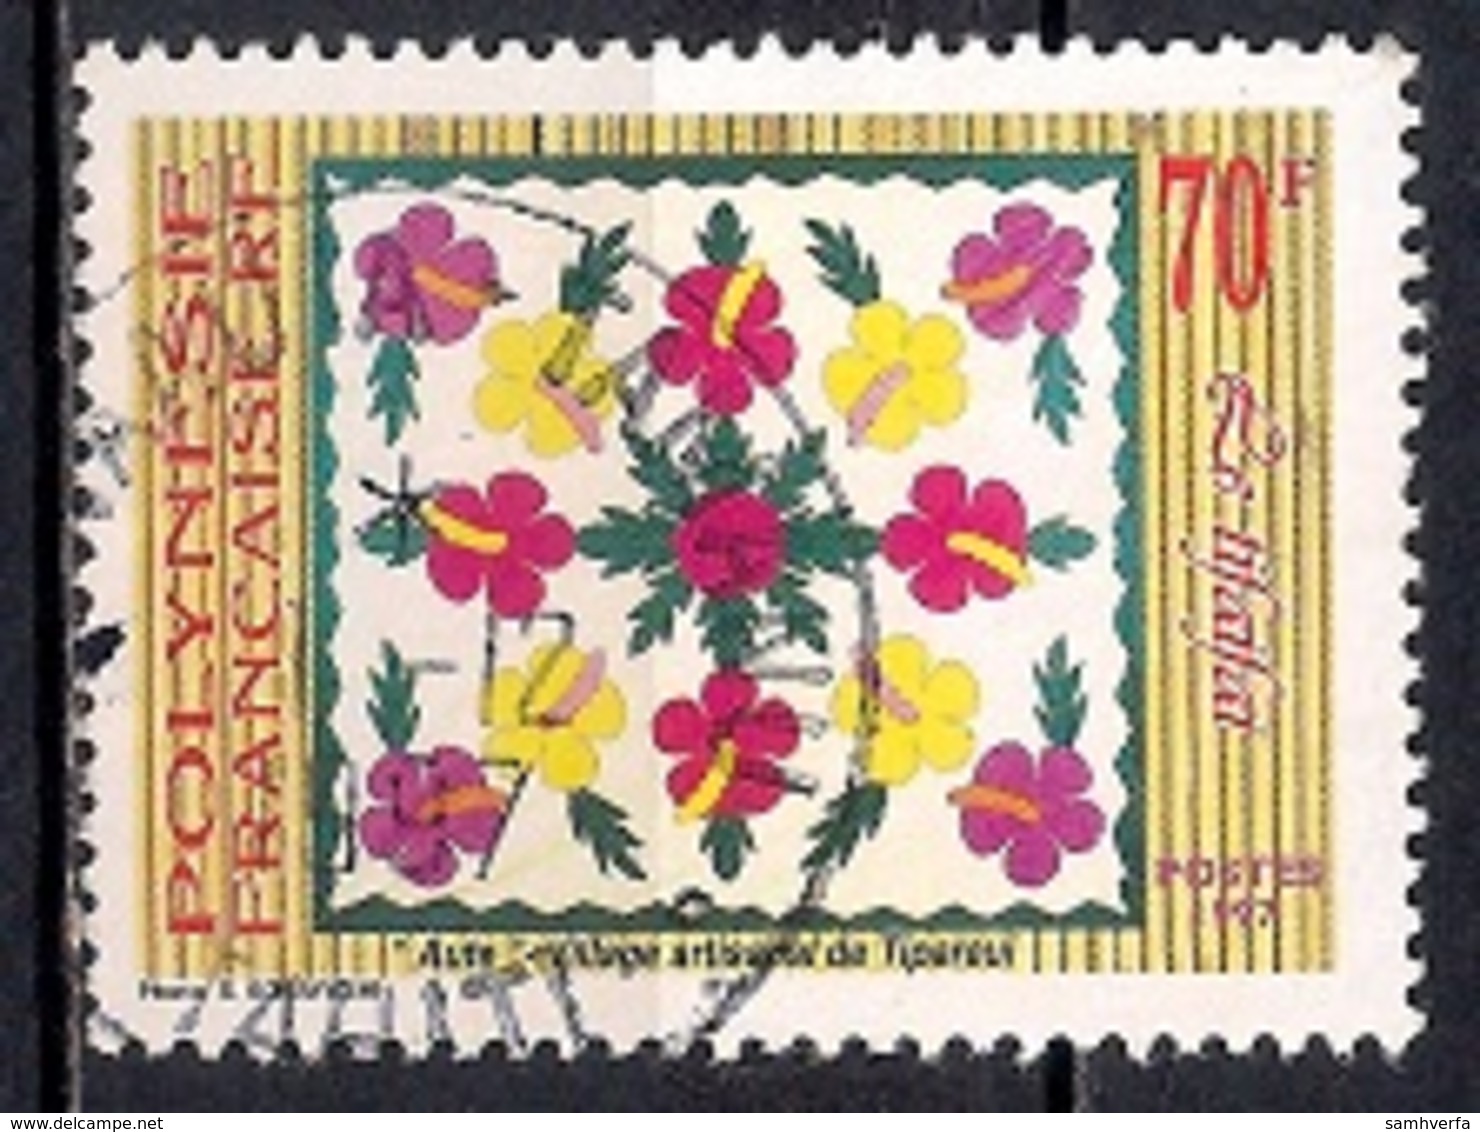 French Polynesia 1997 - Tifaifai - Usados